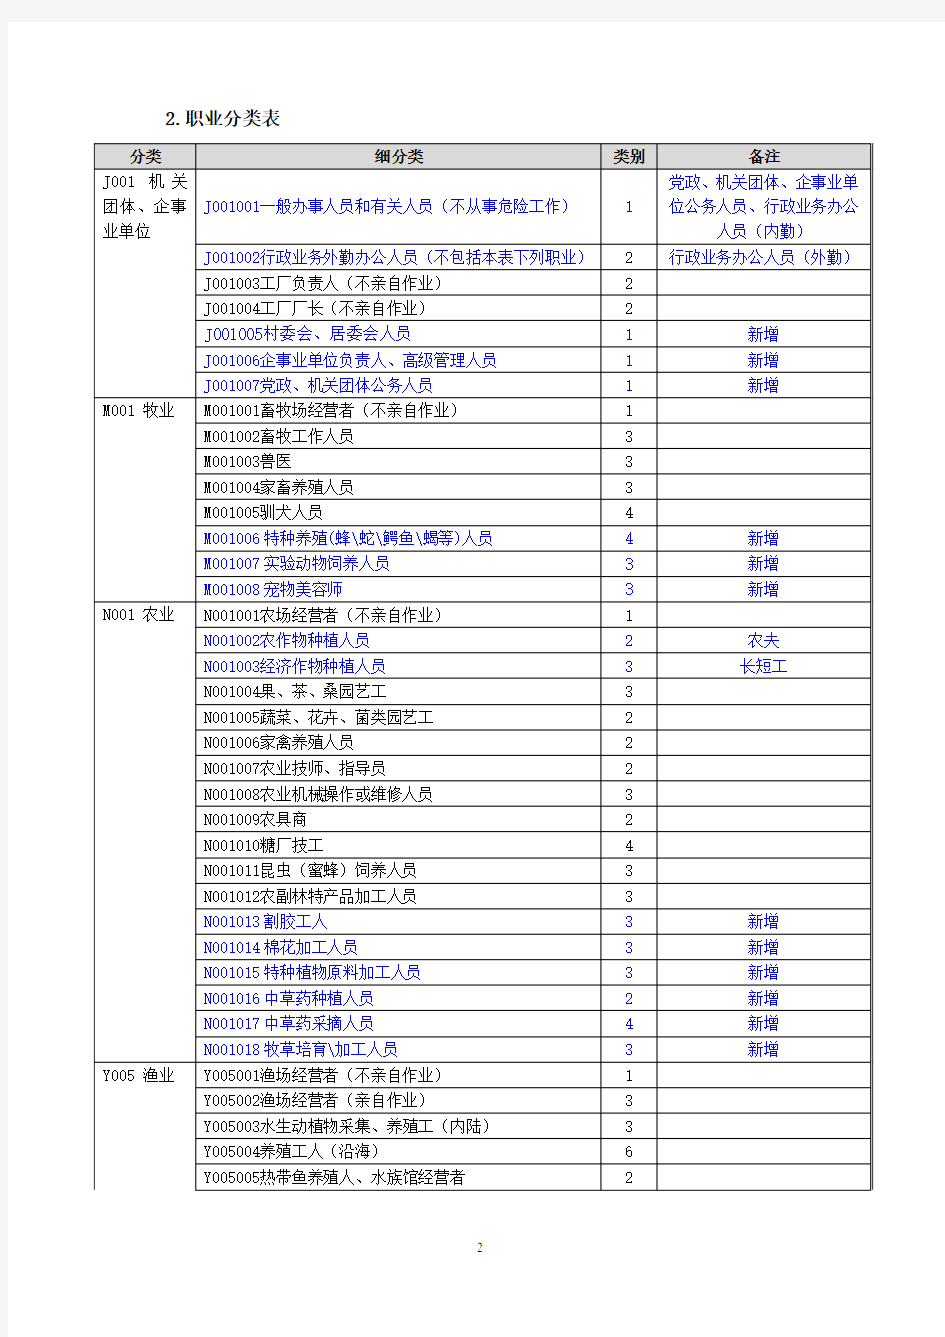 《新华人寿保险股份有限公司六类职业分类表》(2013年版).